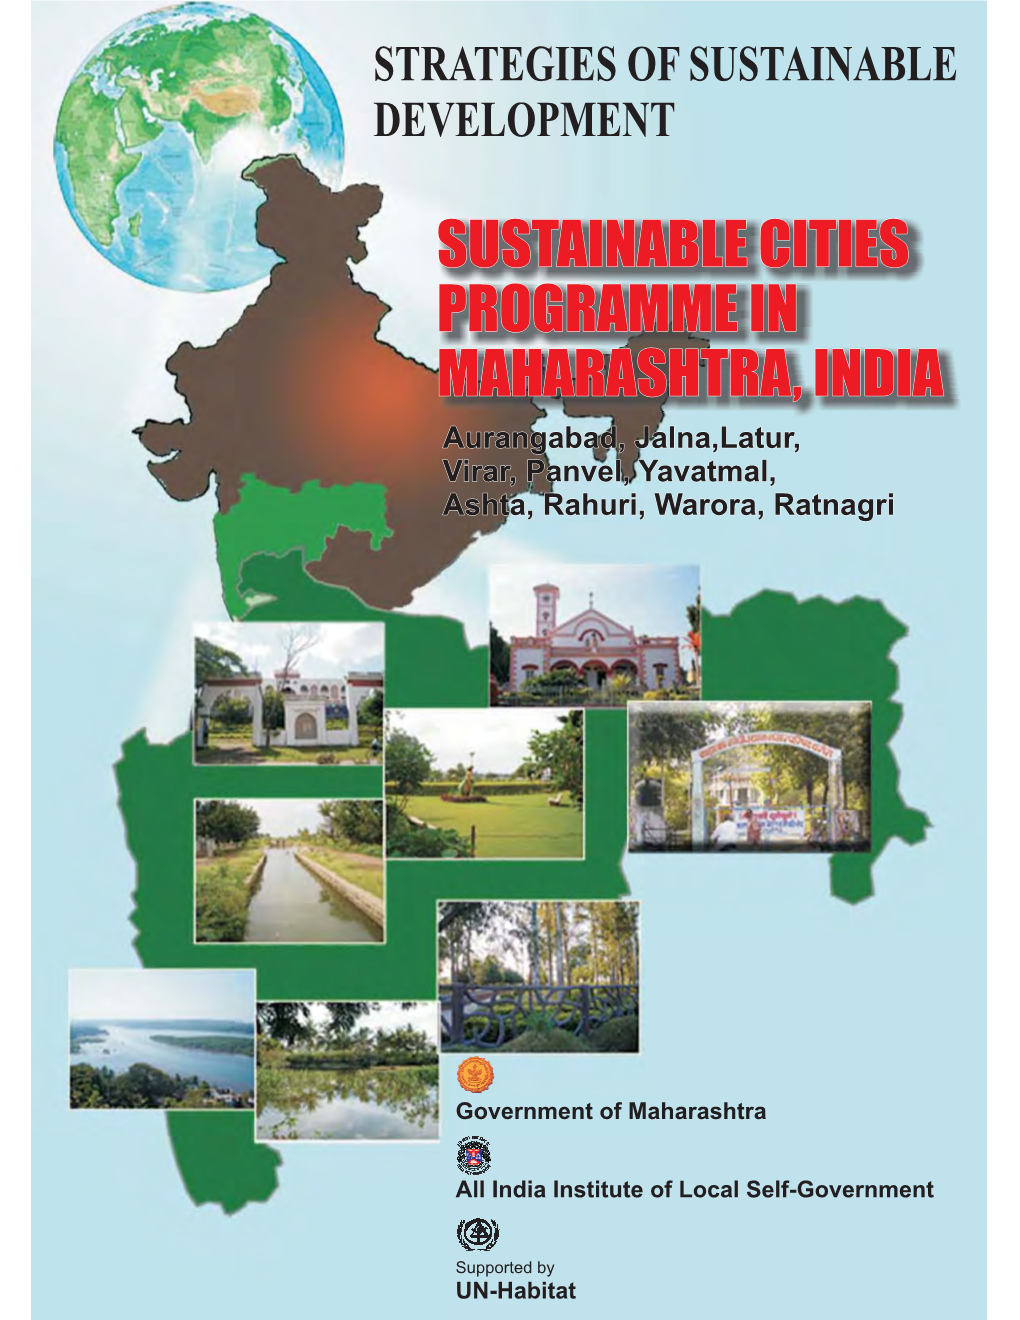 SUSTAINABLE CITIES PROGRAMME in MAHARASHTRA, INDIA Aurangabad, Jalna,Latur, Virar,Panvel, Yavatmal, Ashta, Rahuri, Warora, Ratnagri